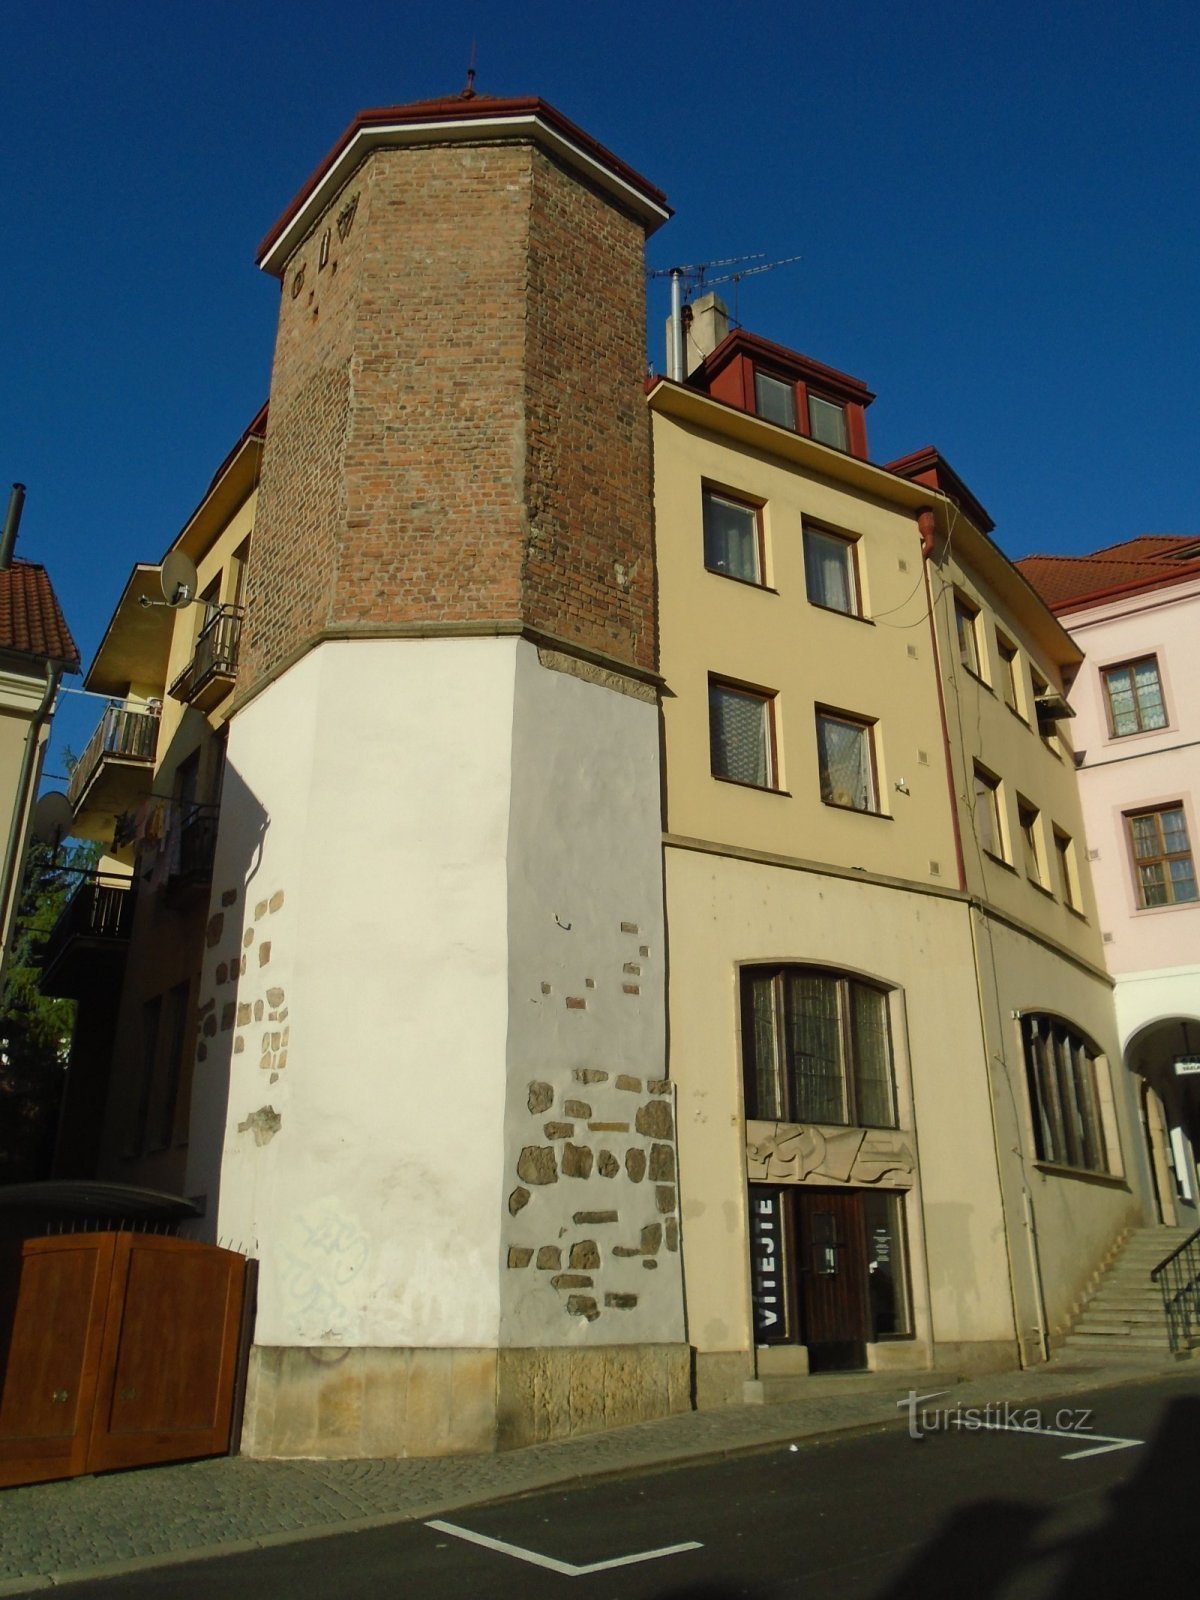 Malé náměstí št. 2 (Hradec Králové, 25.4.2020. april XNUMX)